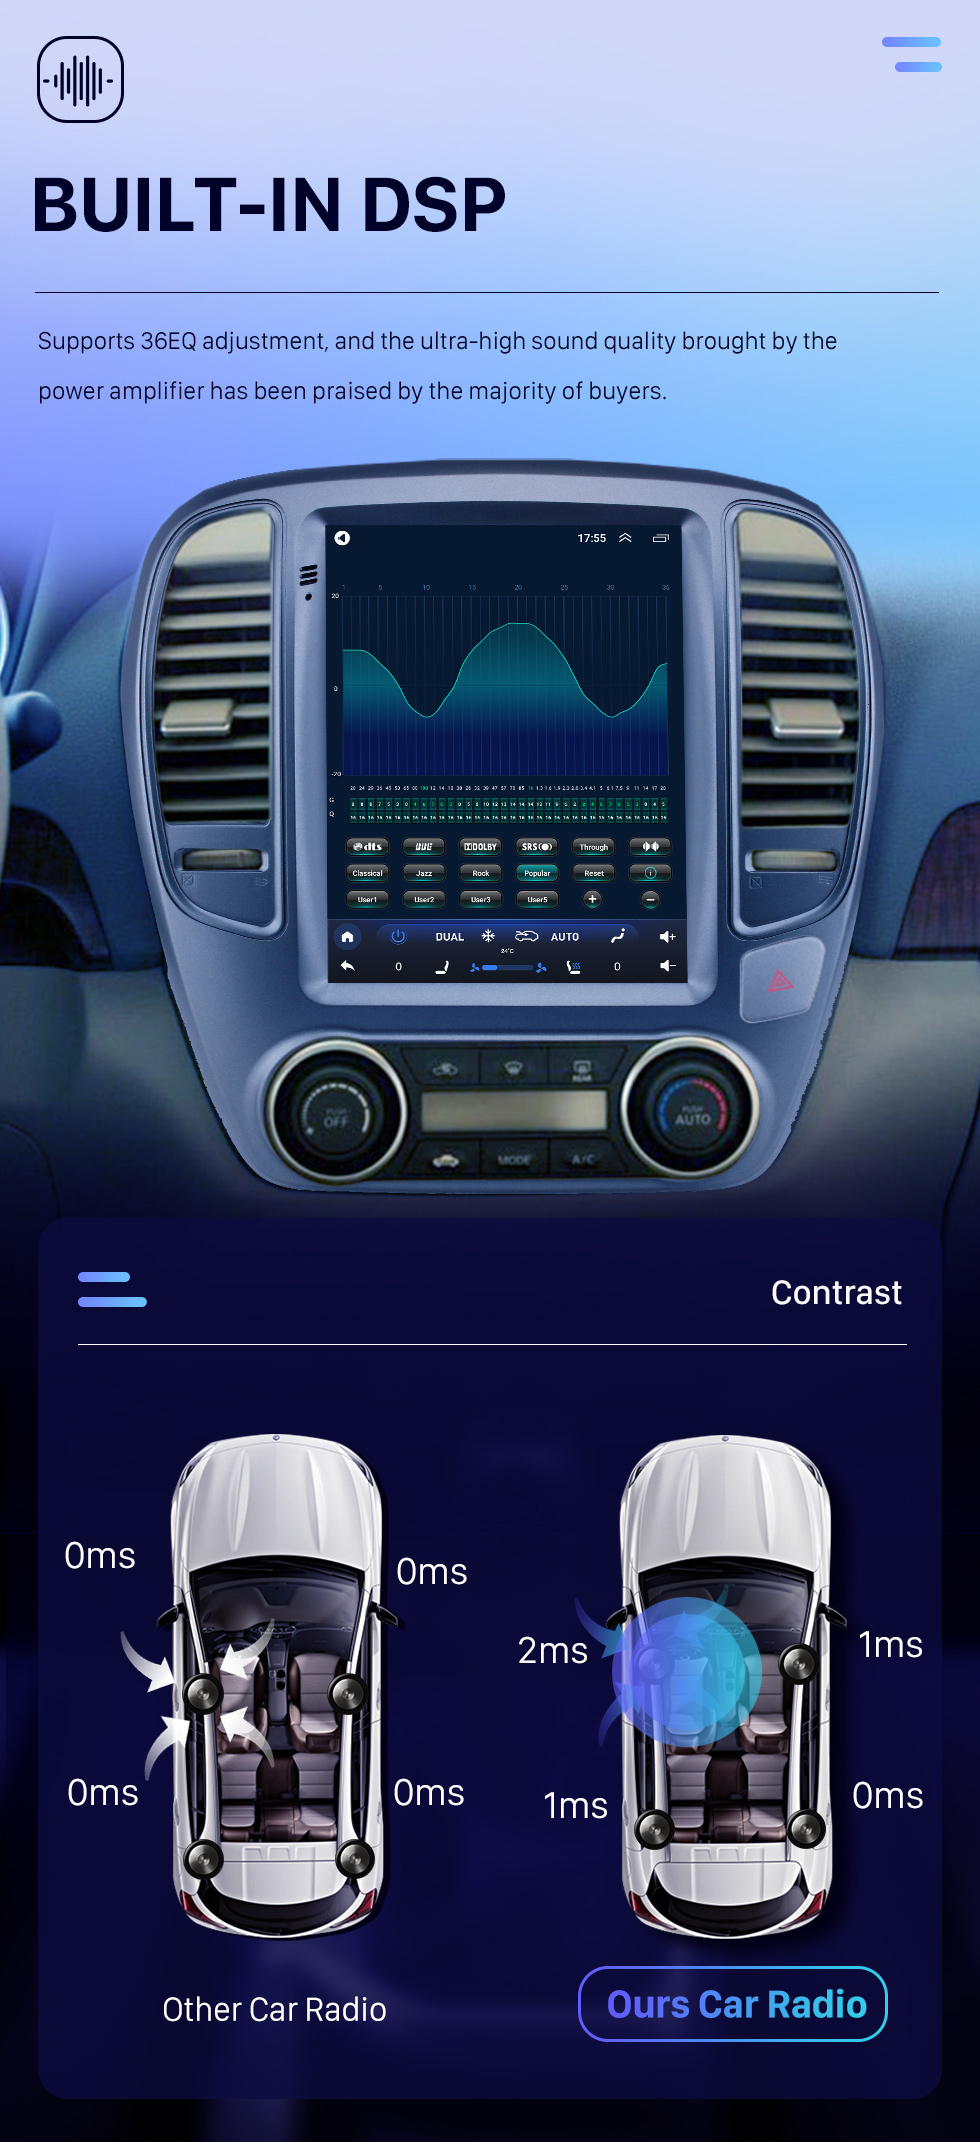 Seicane 2006-2012 Nissan Sylphy 9.7 pulgadas Android 10.0 Radio de navegación GPS con pantalla táctil Bluetooth USB WIFI compatible con Carplay Cámara trasera